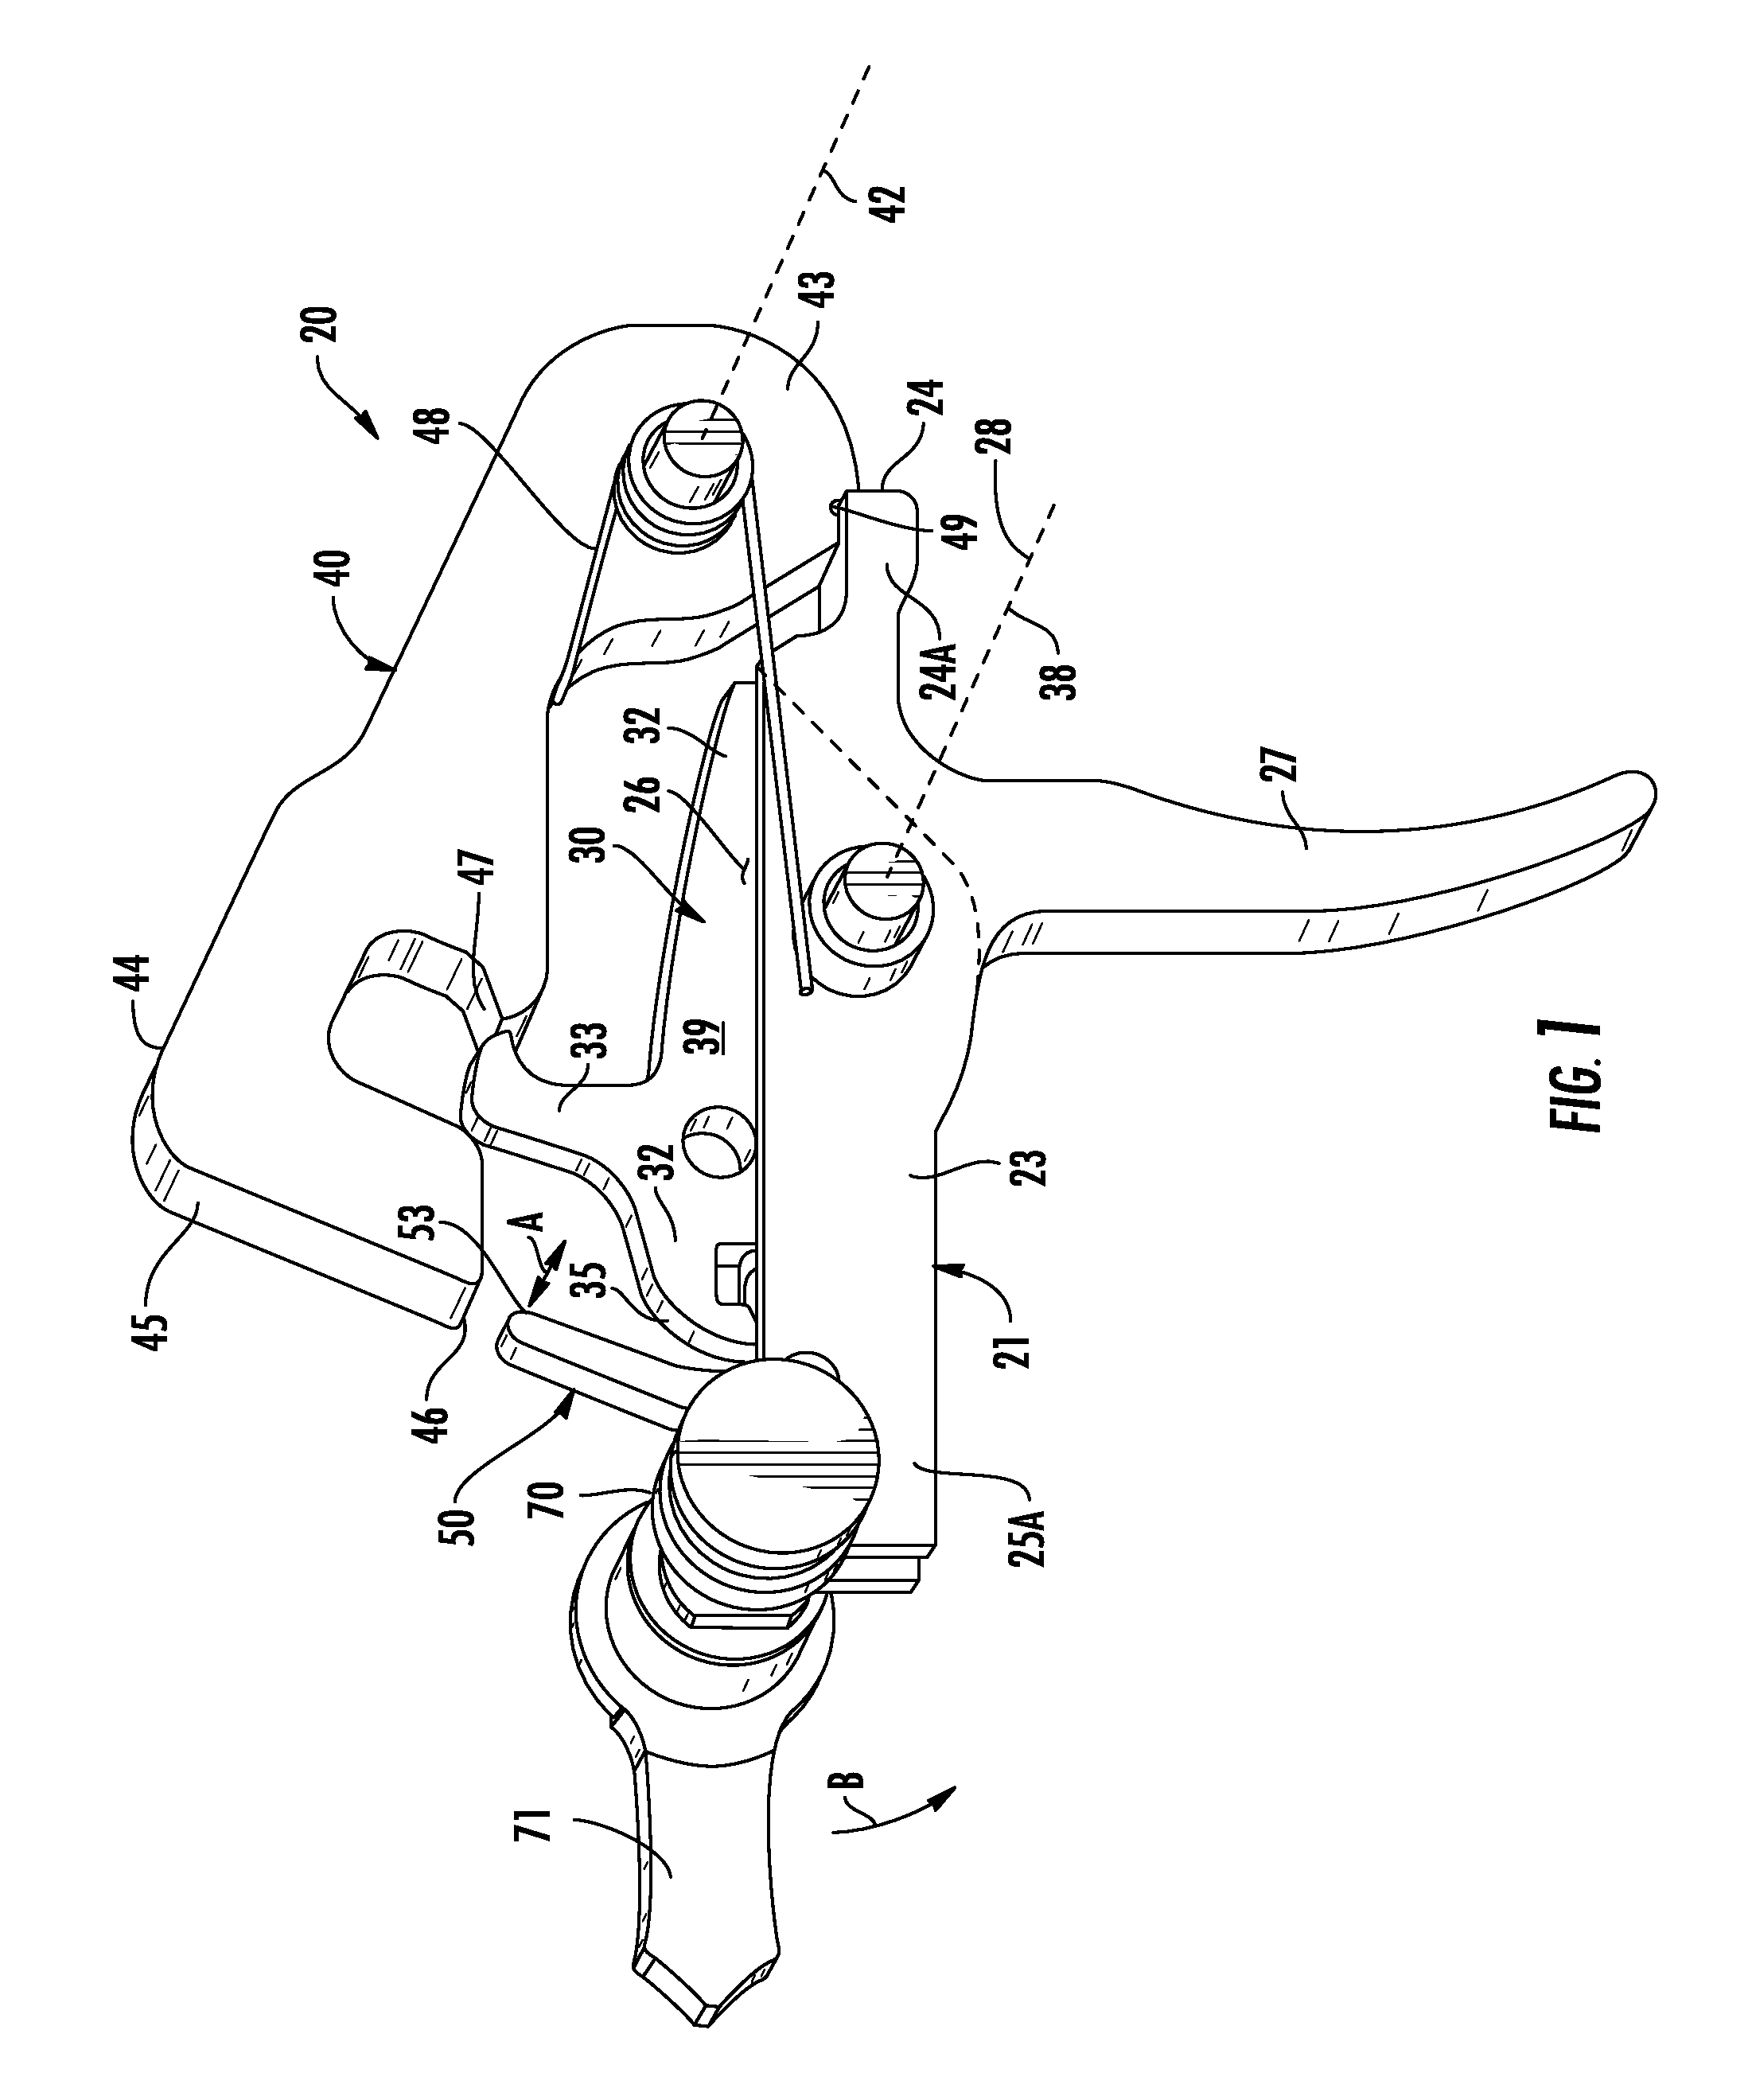 Trigger mechanism